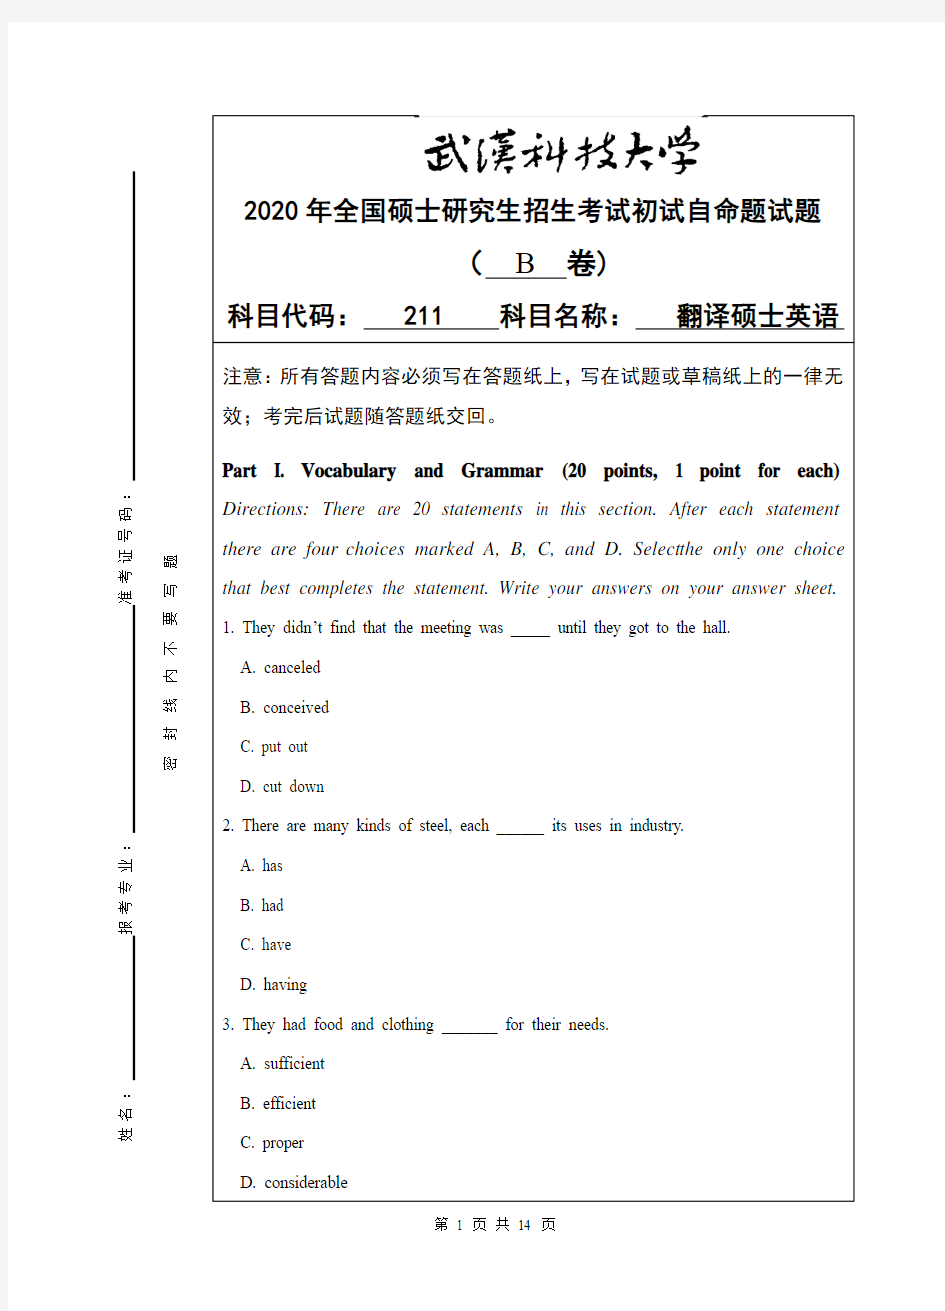 武汉科技大学211翻译硕士英语专业课考研真题及答案(2020年)